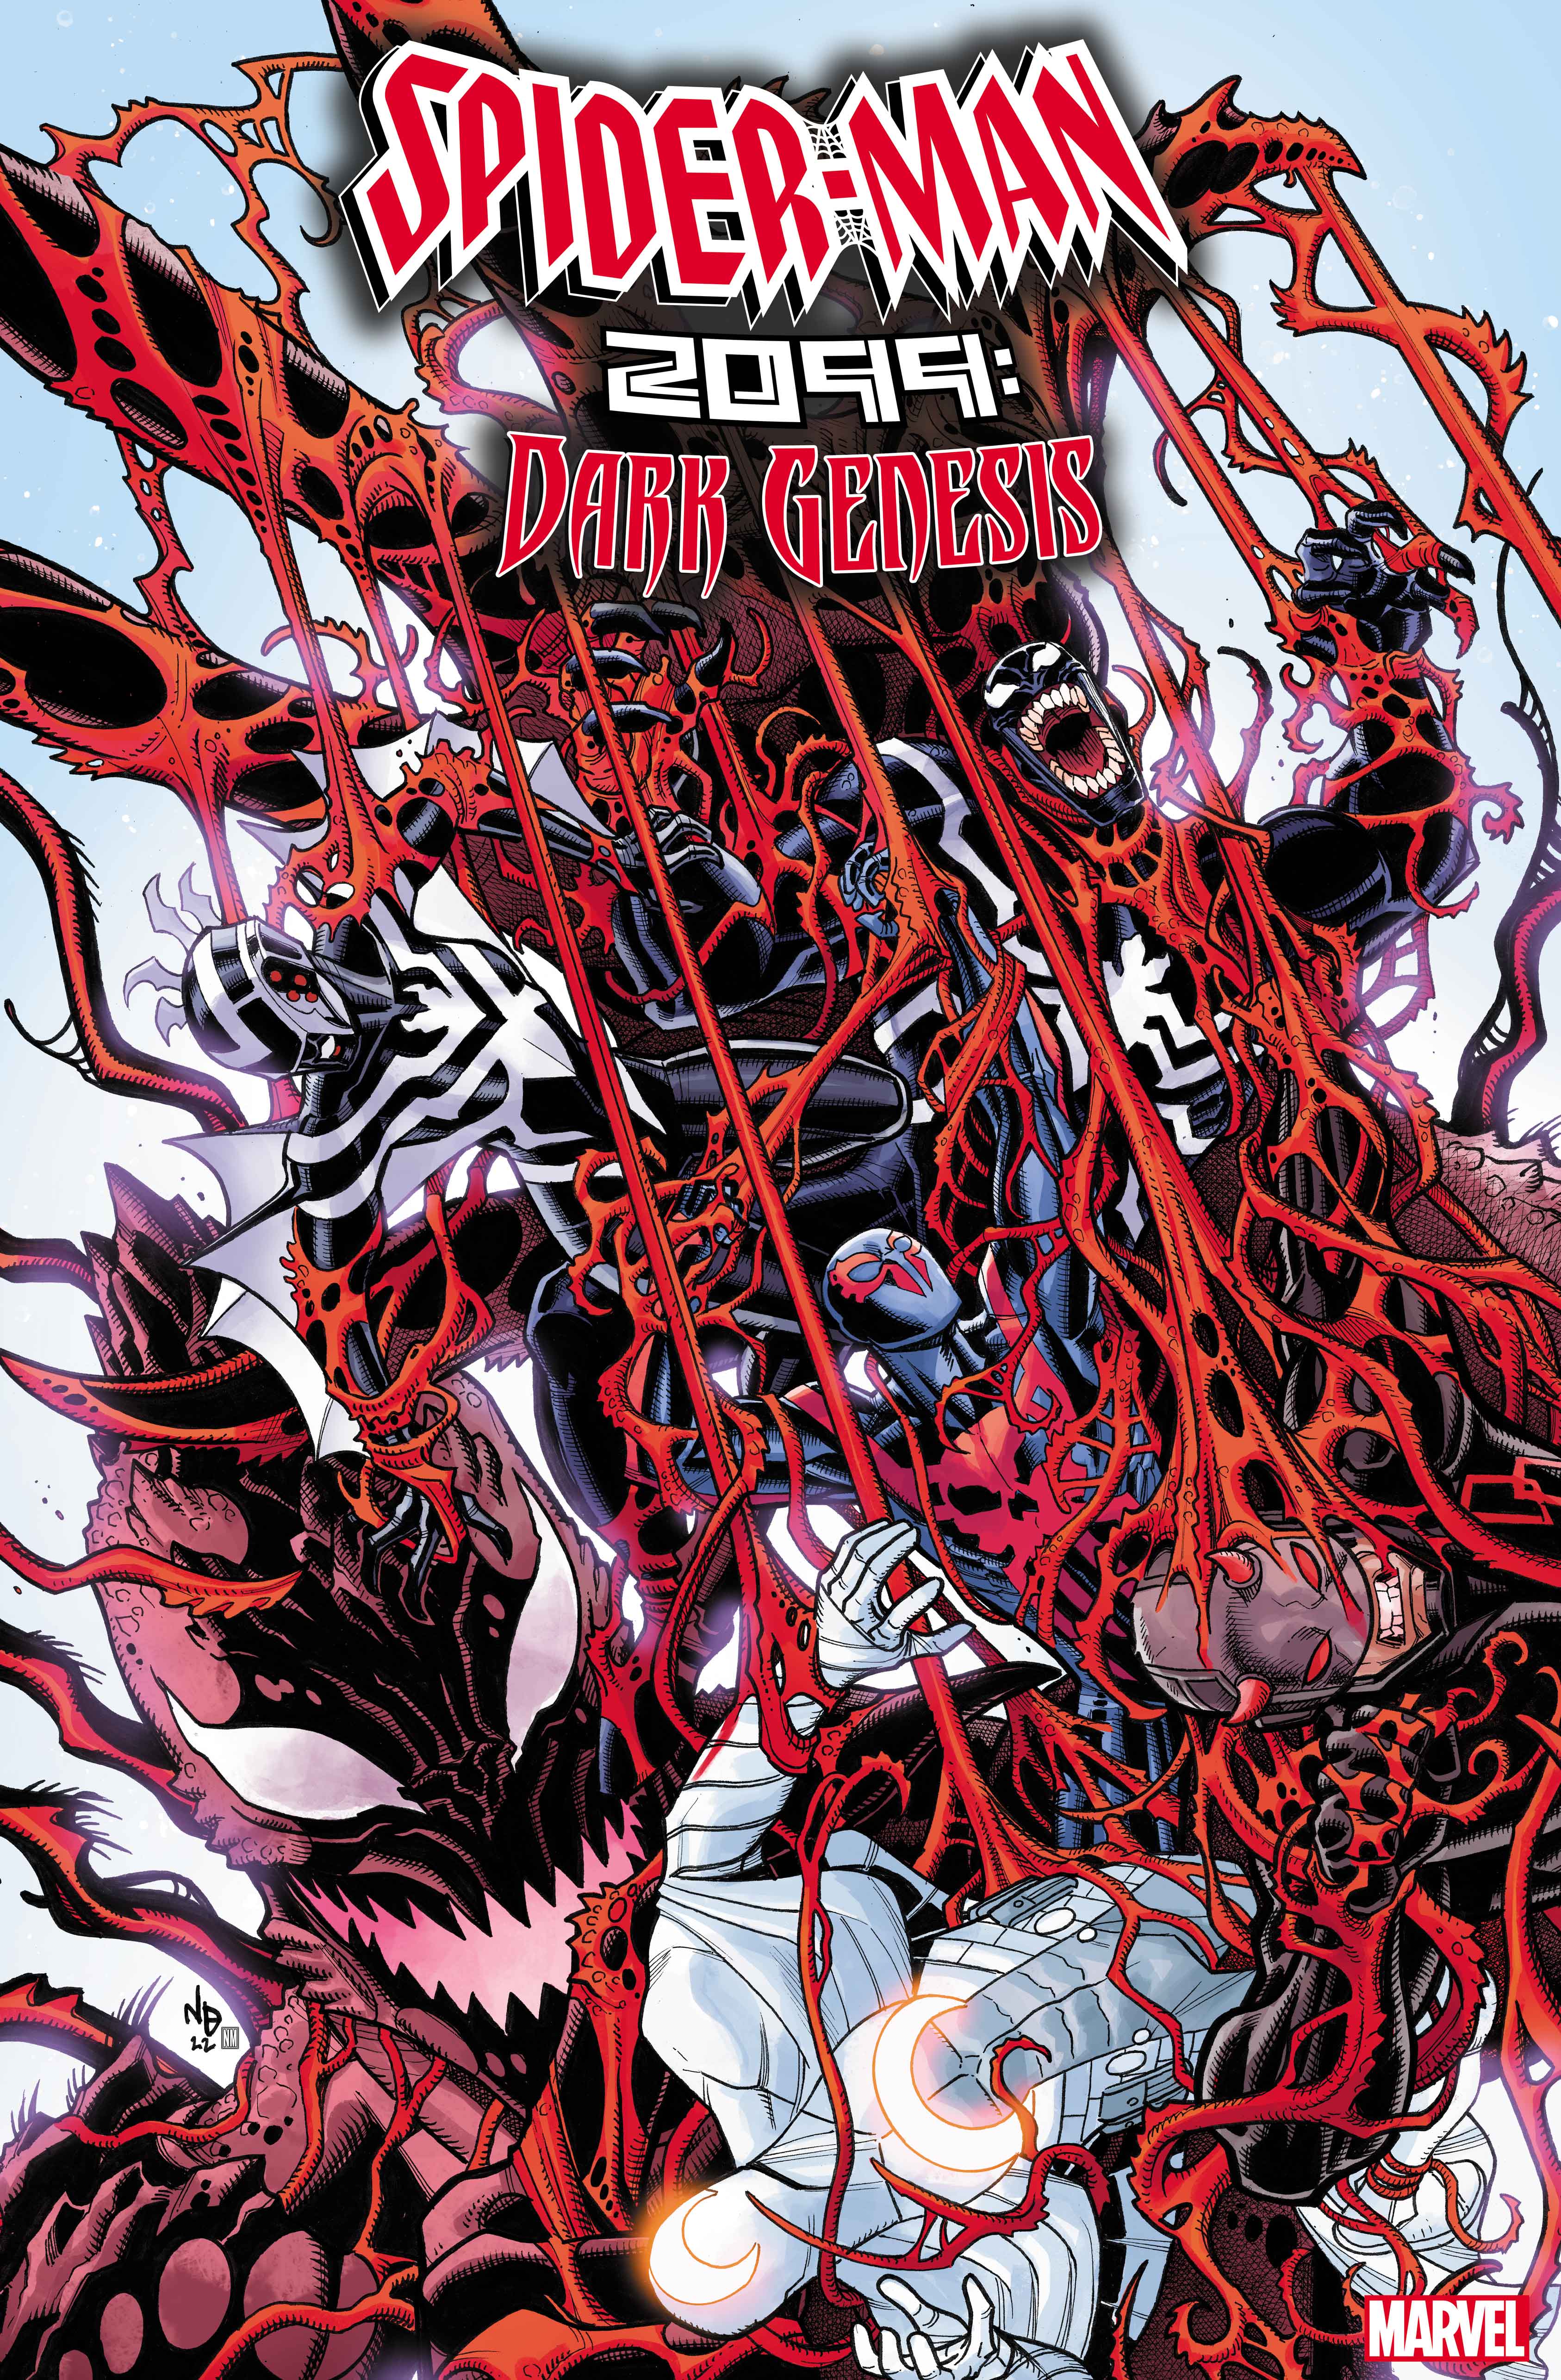 SPIDER-MAN 2099: DARK GENESIS #4 cover